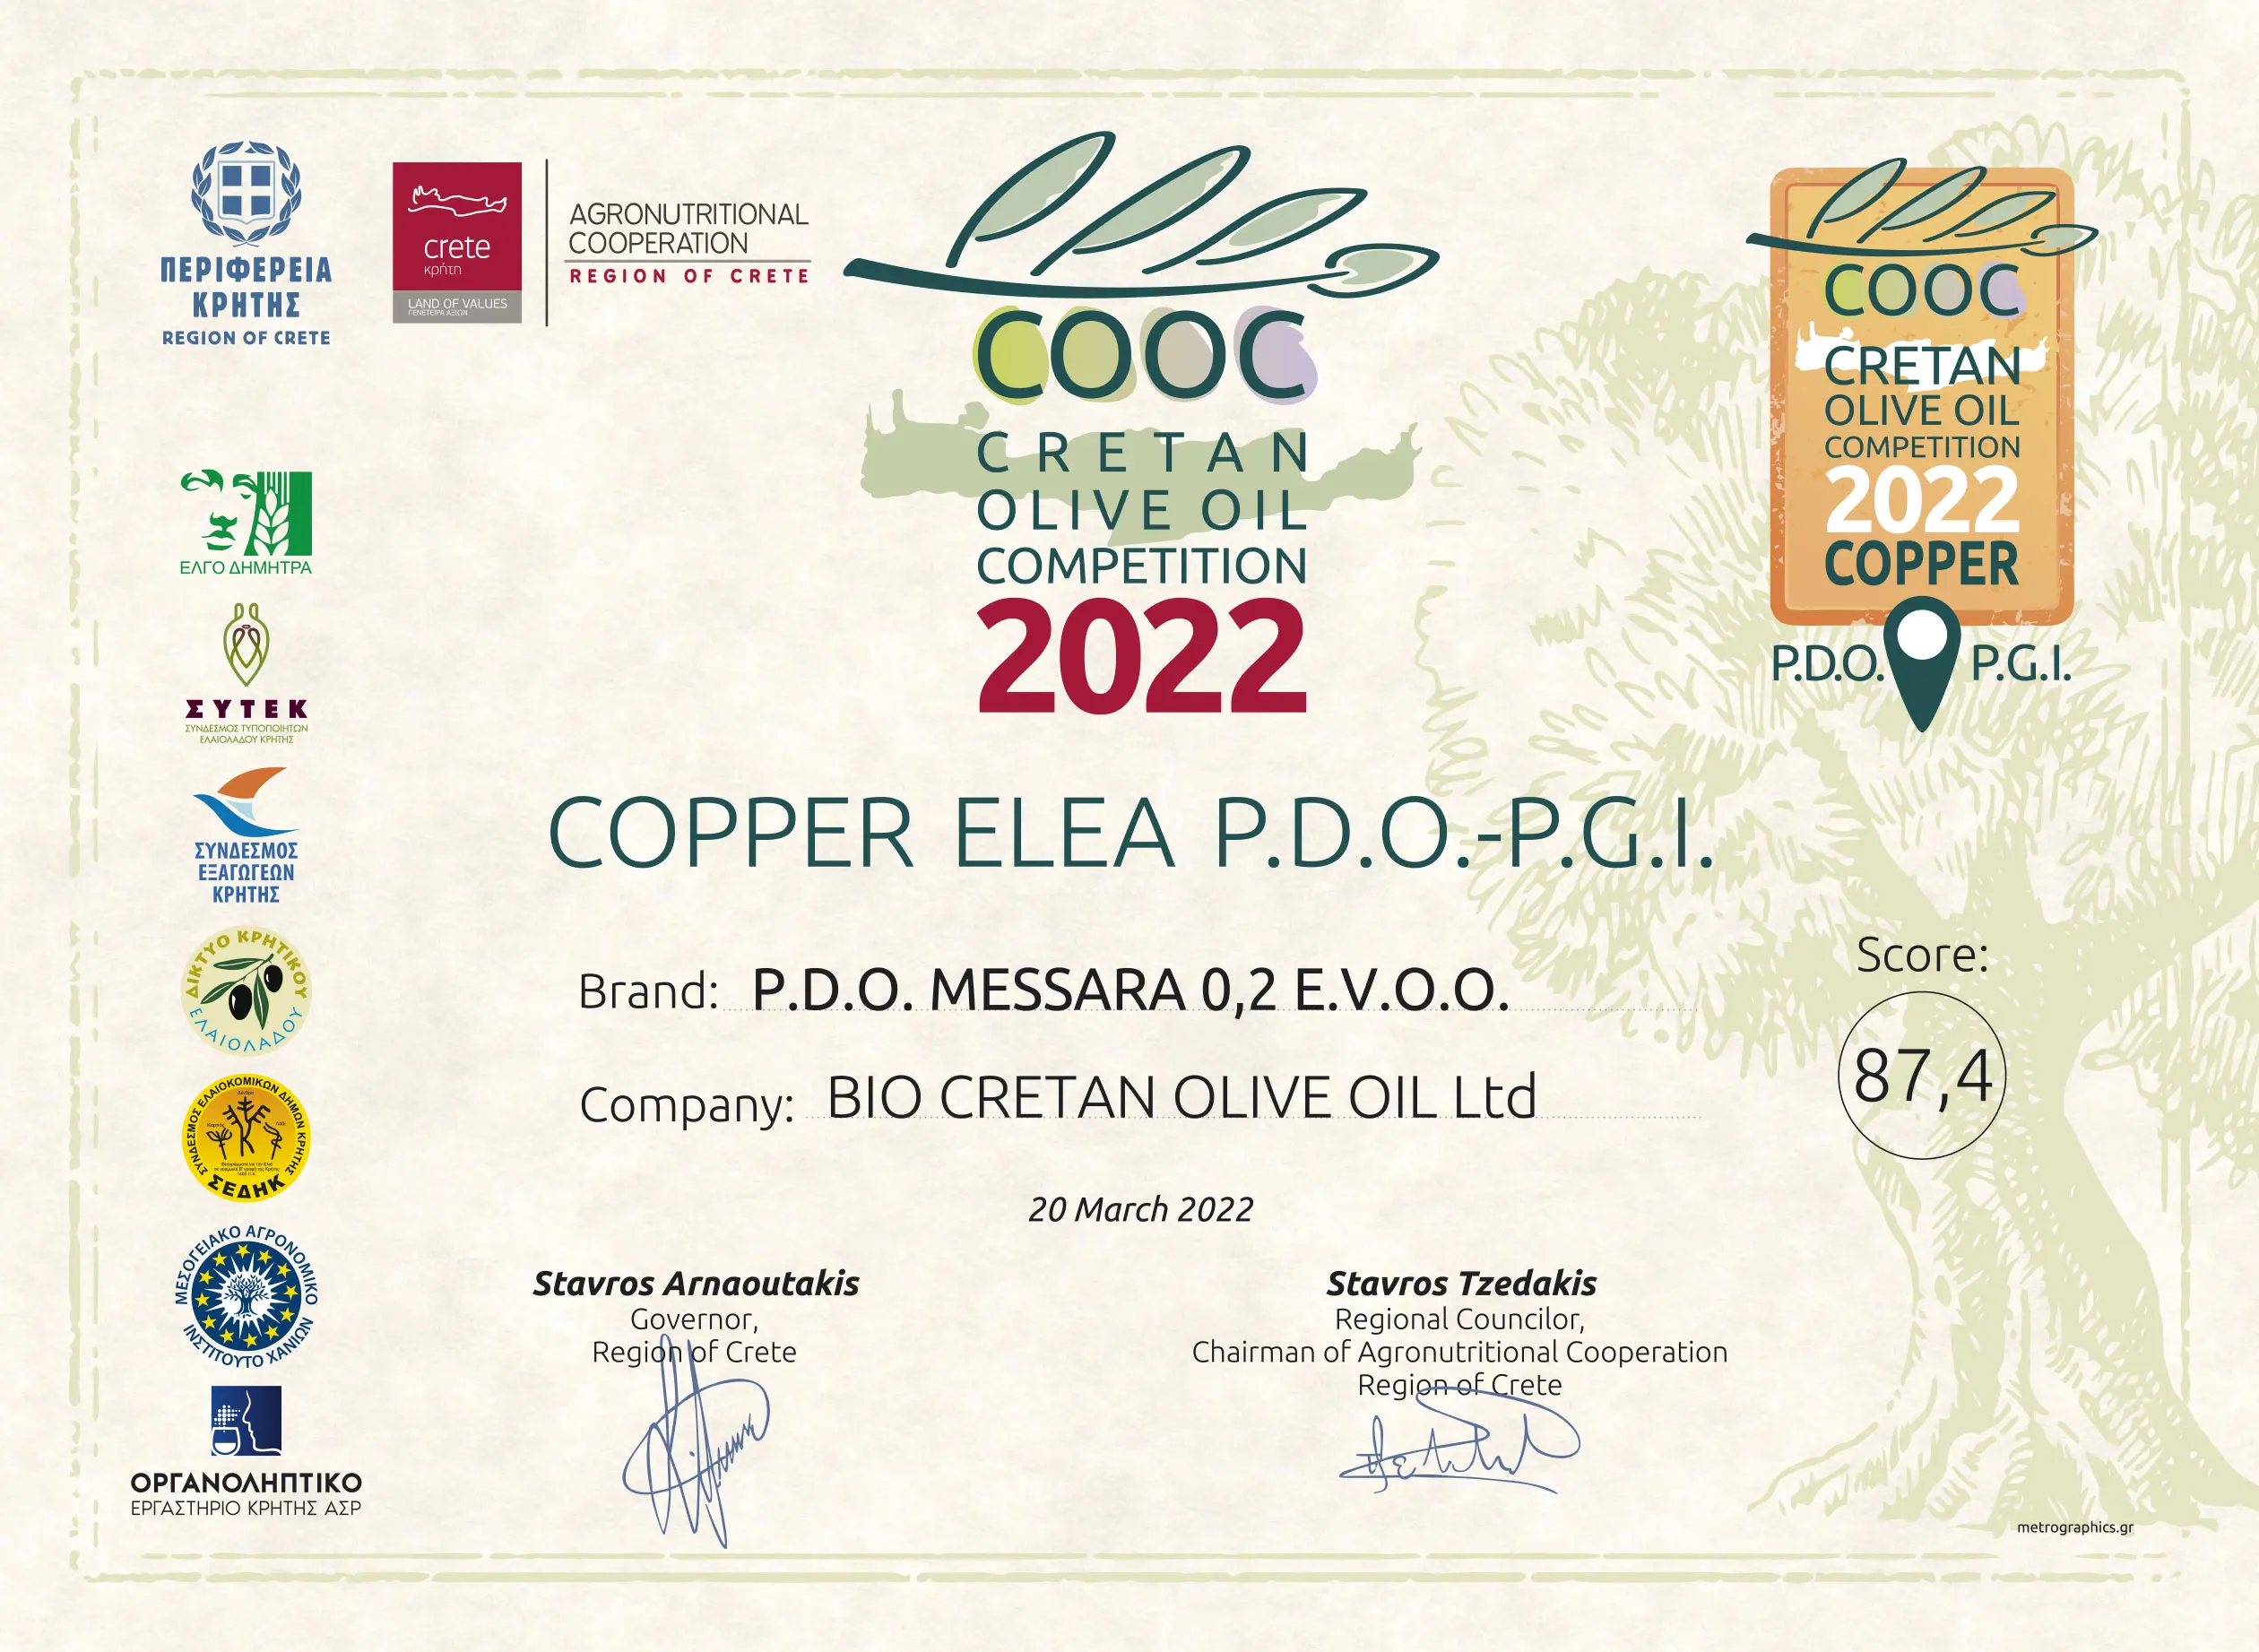 COOC - Concours d'huile d'olive crétoise